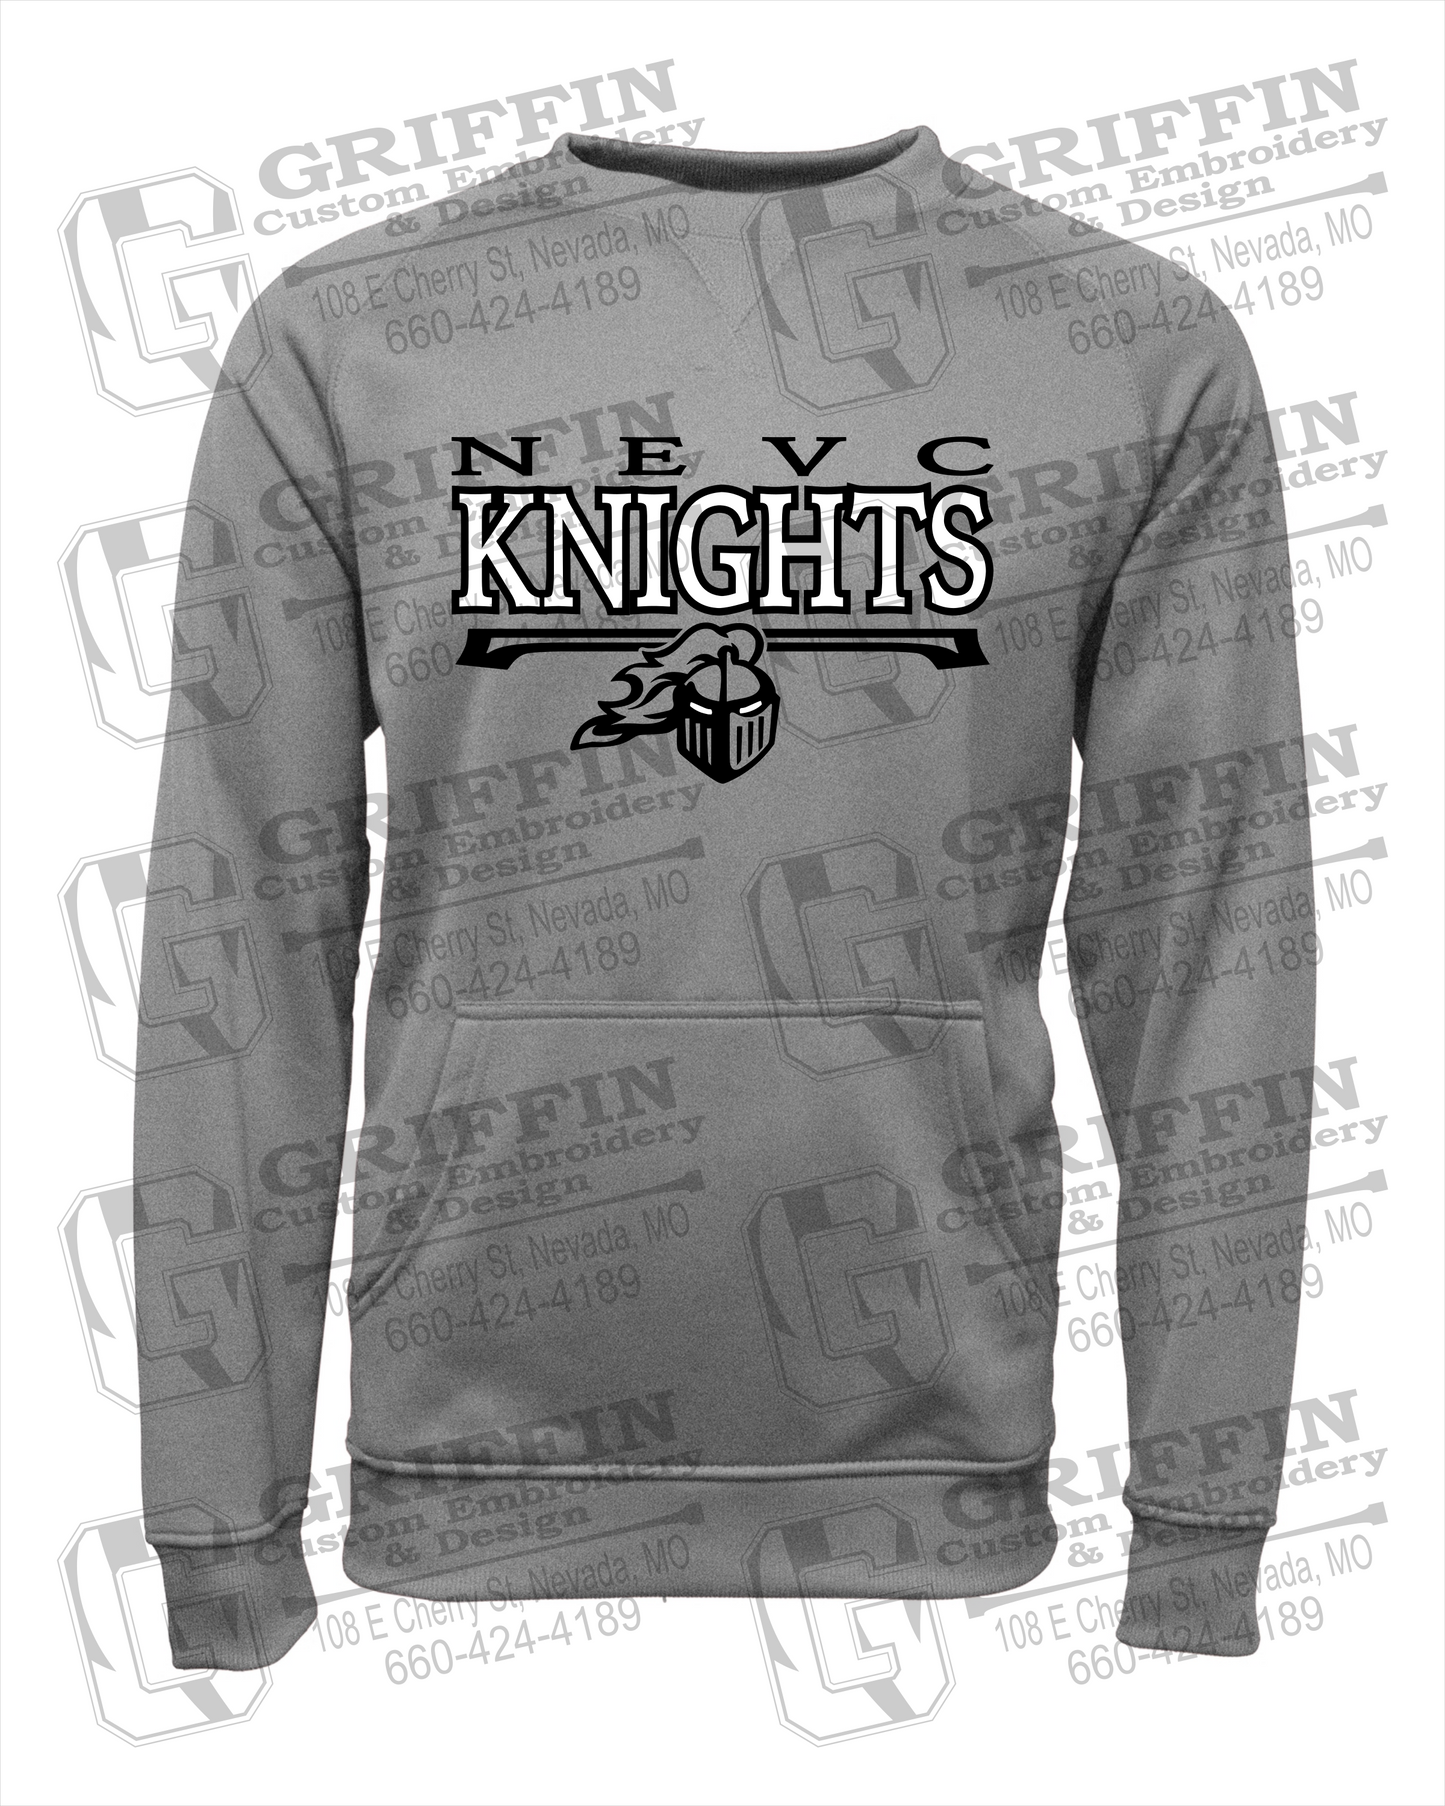 NEVC Knights 23-A Youth Sweatshirt